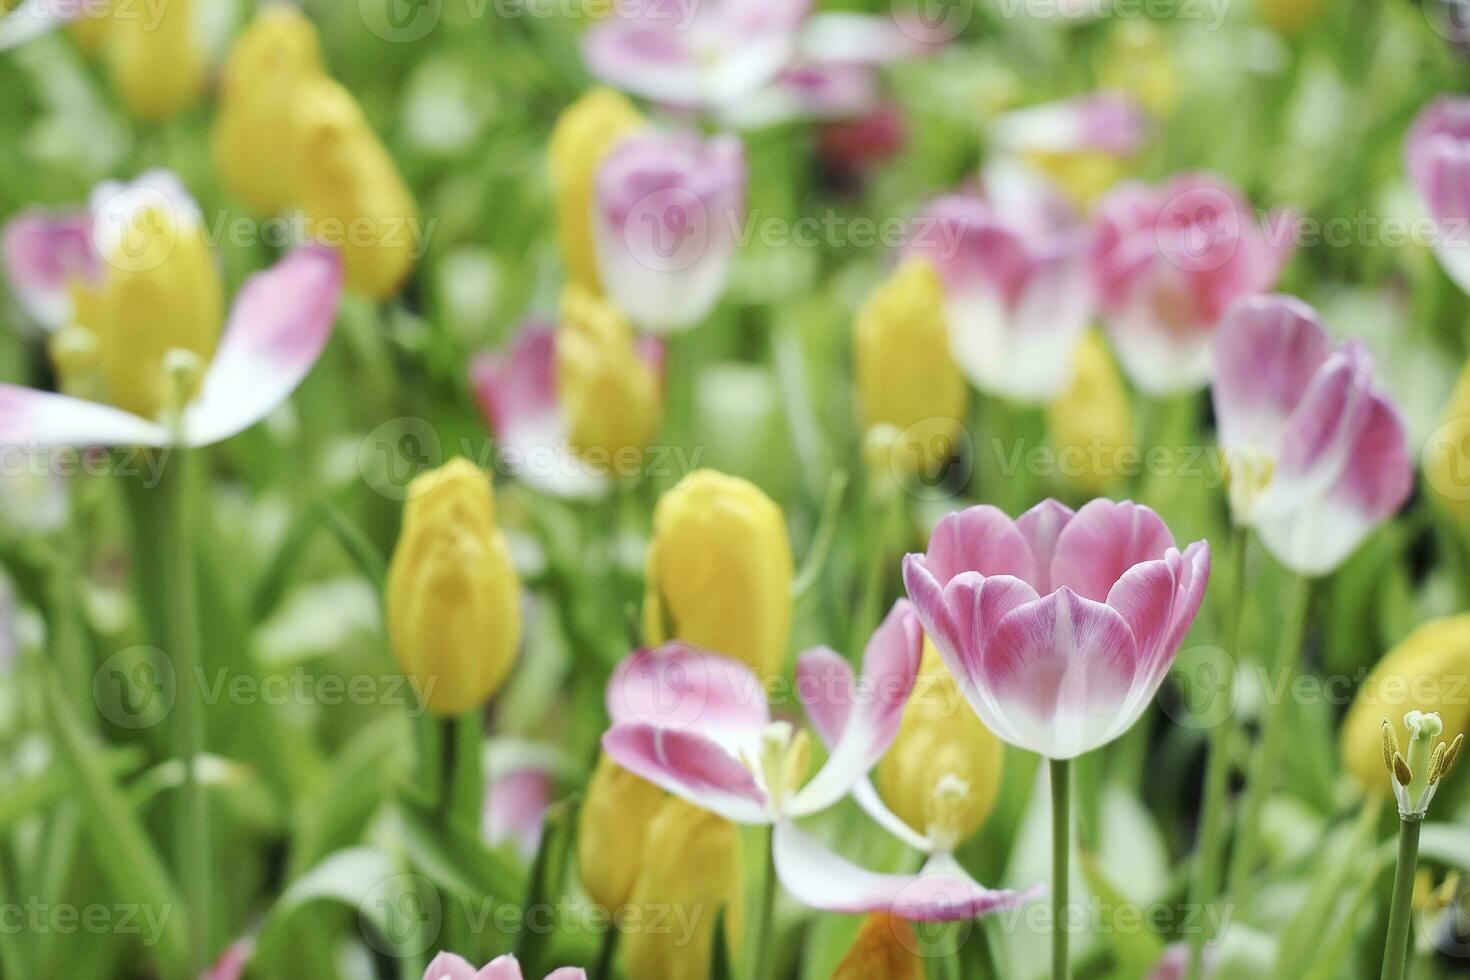 fält av färgrik skön bukett av tulpan blomma i trädgård för vykort dekoration och lantbruk begrepp design med selektiv fokus foto